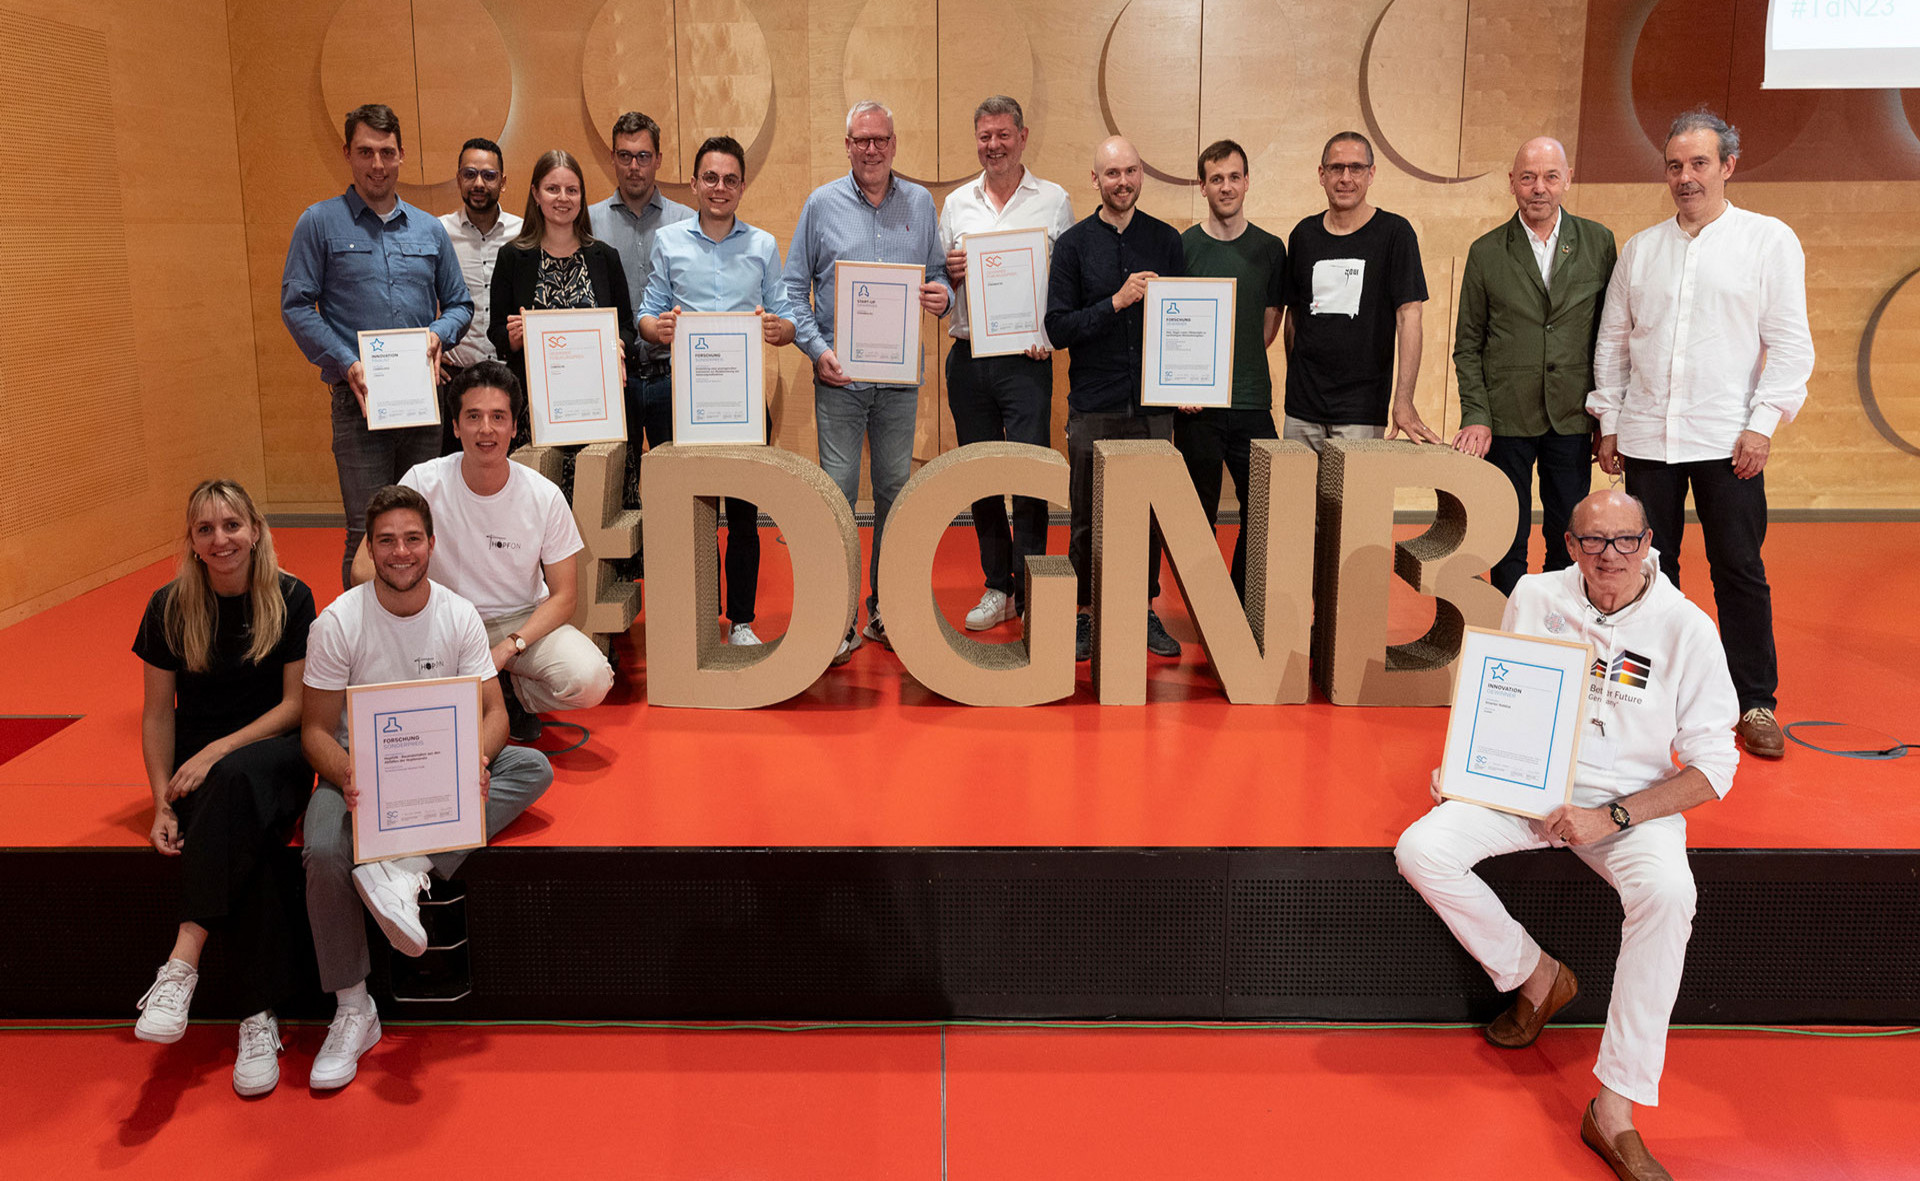 Gruppenfoto der Sieger der DGNB Sustainability Challenge mit #DGNB-Schriftzug